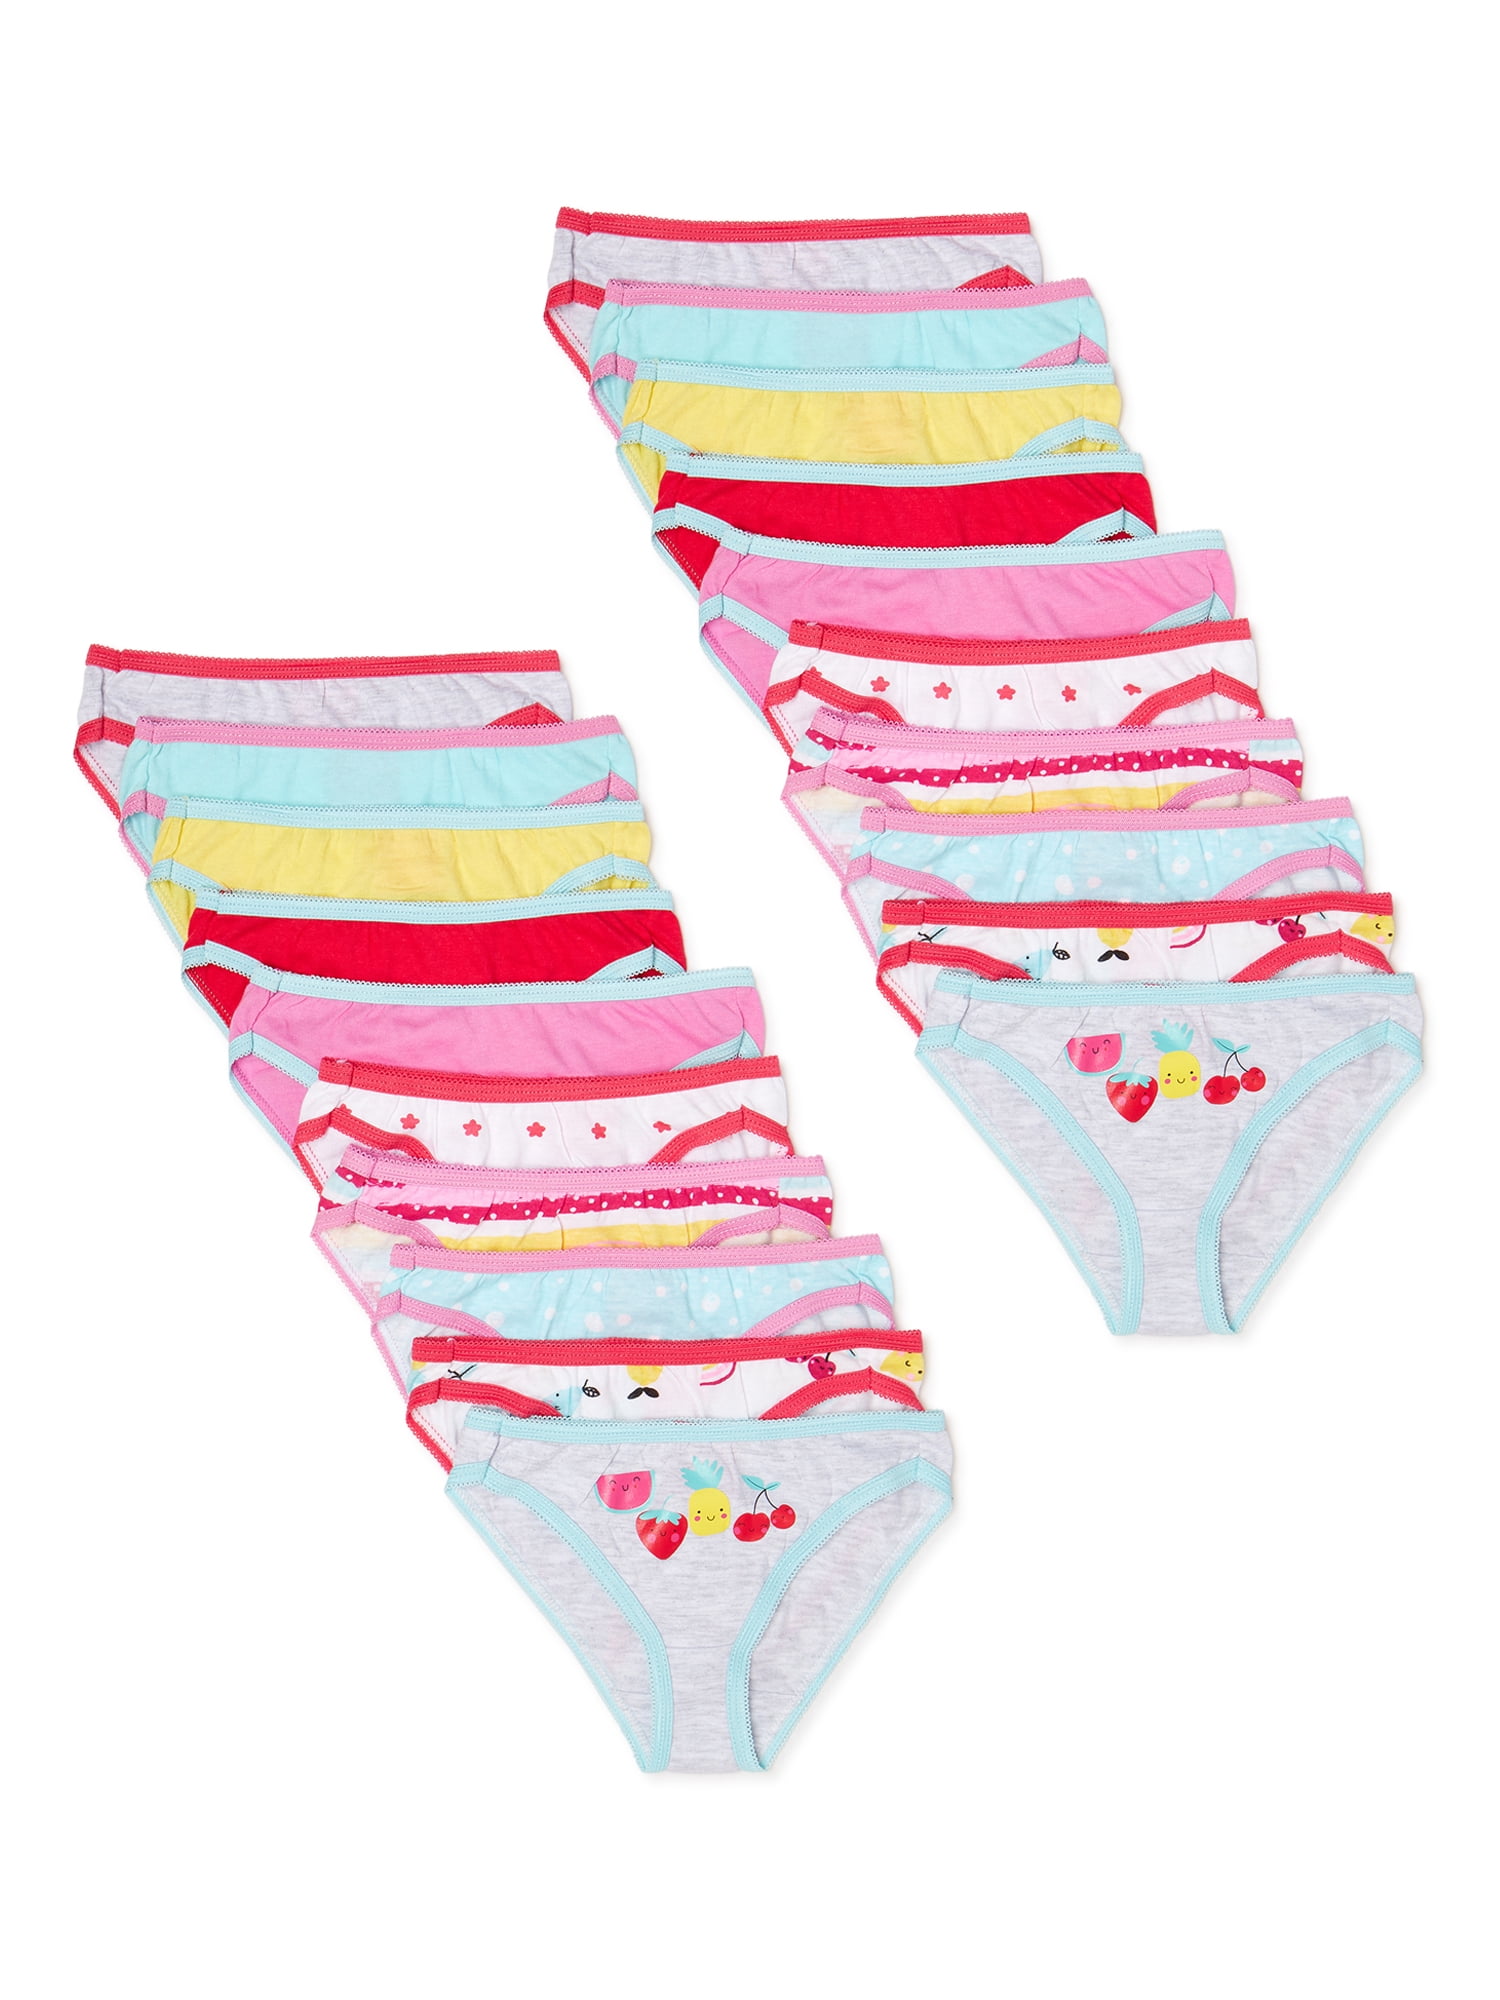 mini eggs Boys Girls Underwear Toddler Kids Cotton Underwear 3T-8T 3 Pack 